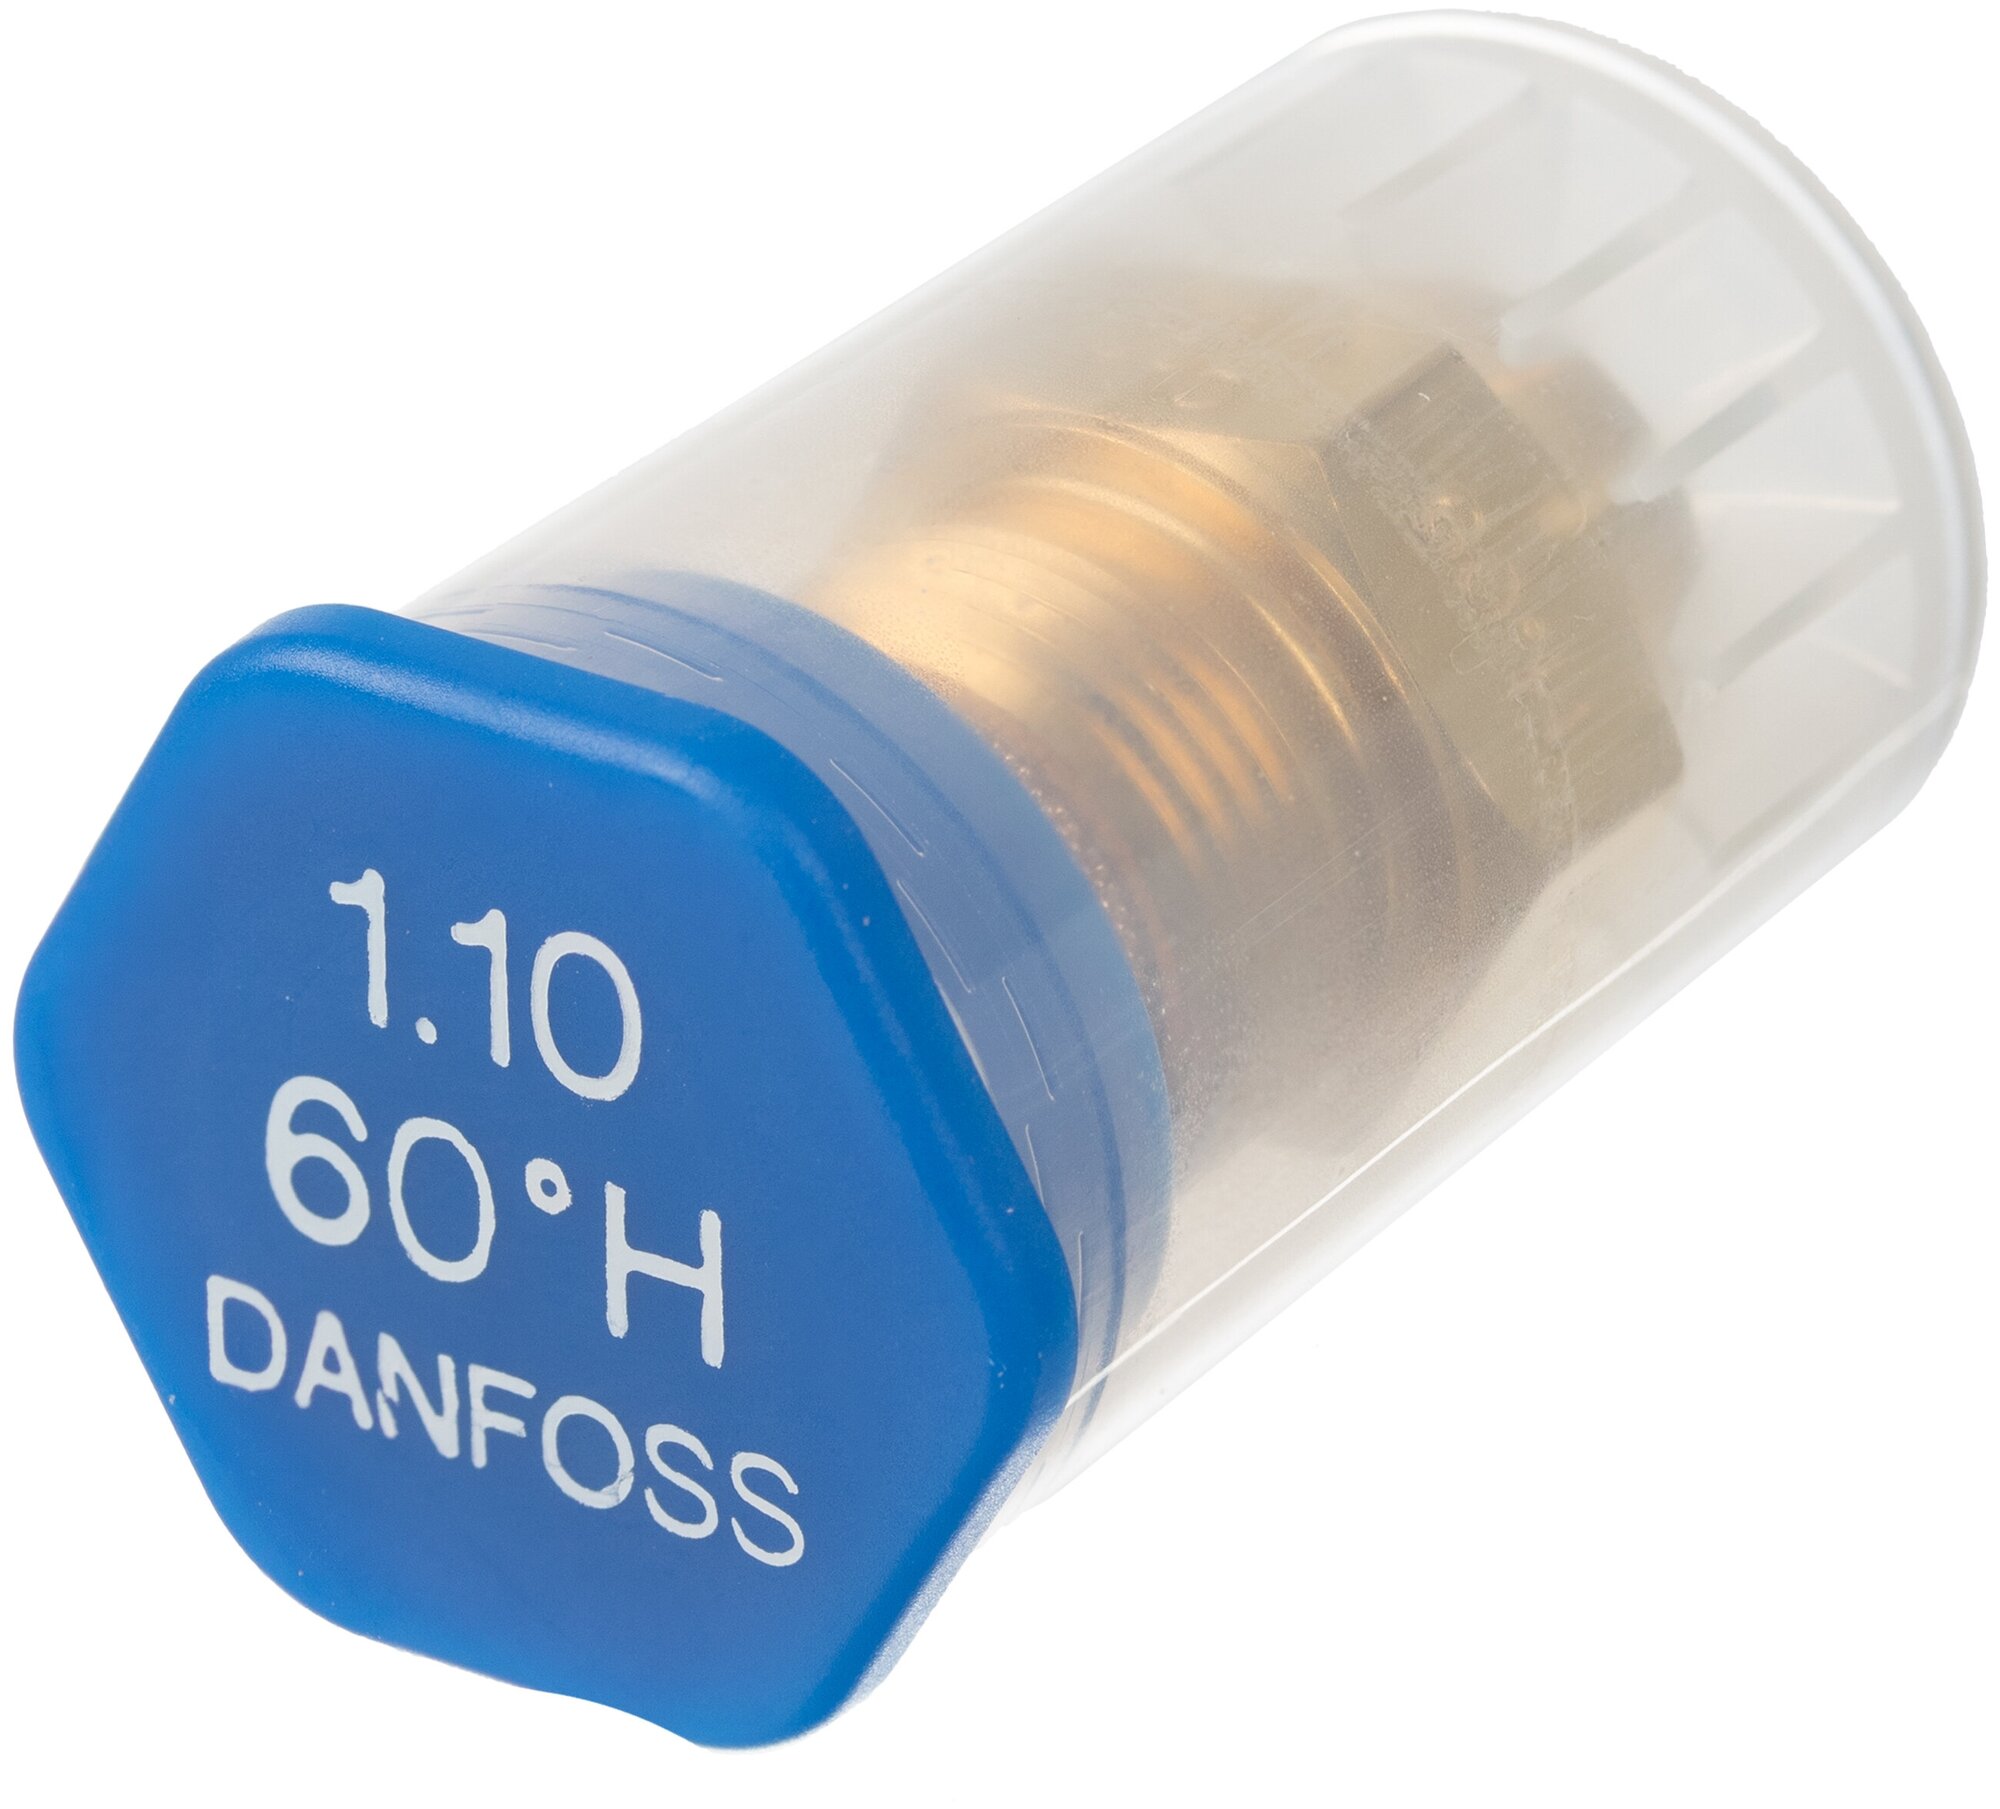 Форсунка для дизельного топлива DANFOSS 1.1 gal/h (4.24 kg/h) * 60 Н. арт. 030H6922